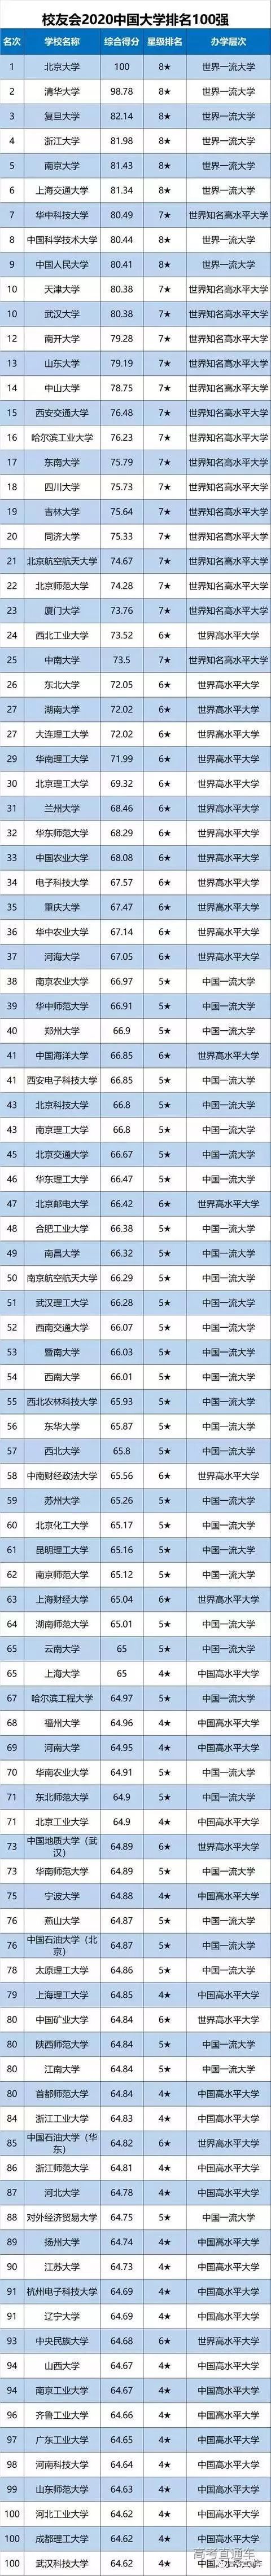 2020广东前十大学排_2020年广东省高校排名:58所高校分7档,深圳